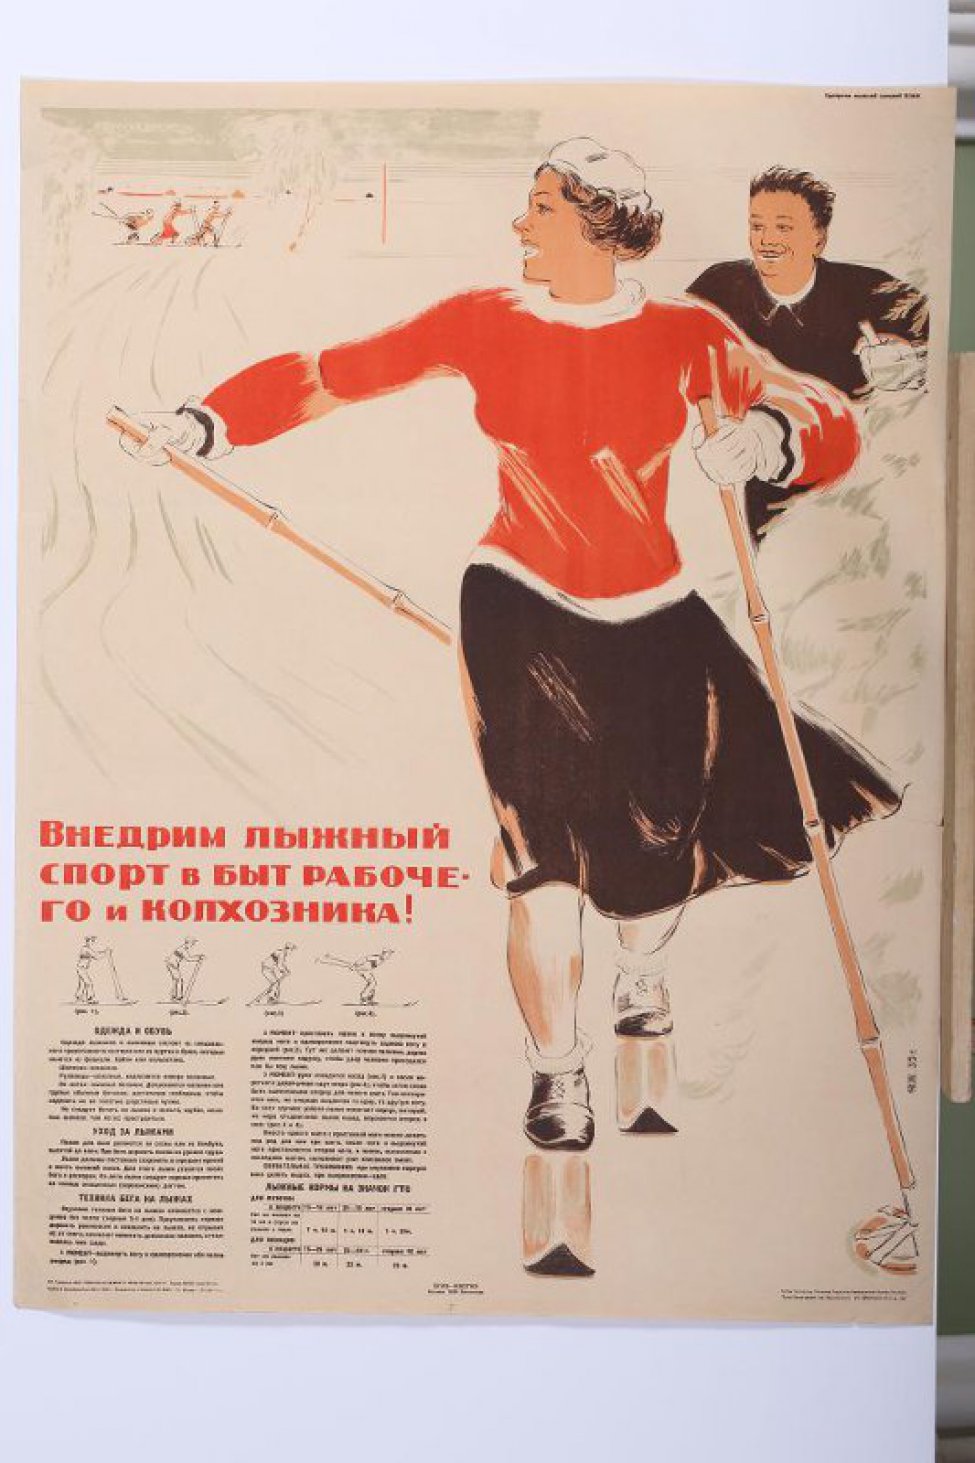 Изображена на зимнем пейзаже молодая лыжница в черной юбке, красном свитере и белом берете. В руках лыжные палки. За ней мужчина лыжник без шапки. Внизу слева текст:" Одежда... вдох".